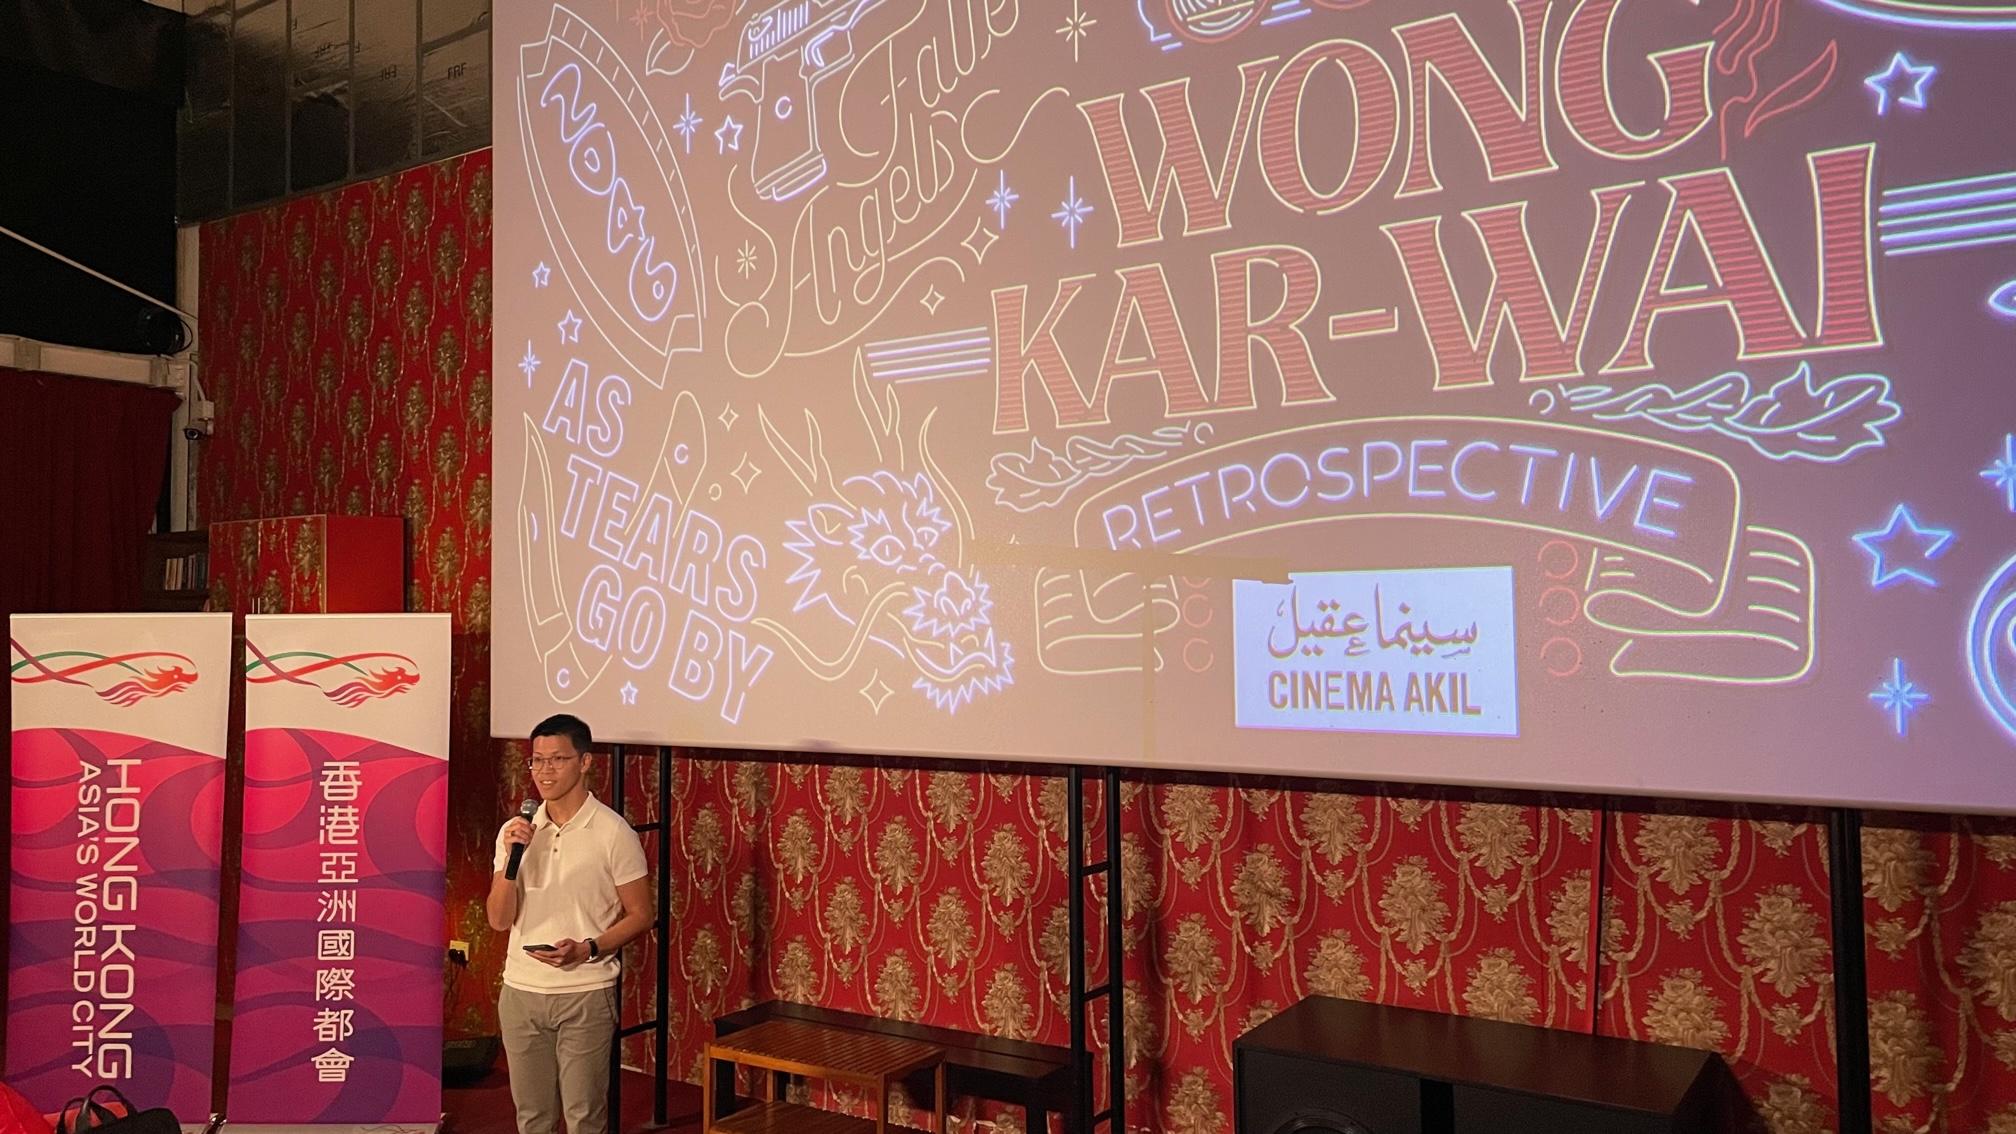 在香港驻迪拜经济贸易办事处（驻迪拜经贸办）的支持下，香港著名电影导演王家卫作品回顾展五月十二日至二十八日（迪拜时间）在迪拜的Cinema Akil上映。图示驻迪拜经贸办副处长王梓轩在活动开幕首映致辞。